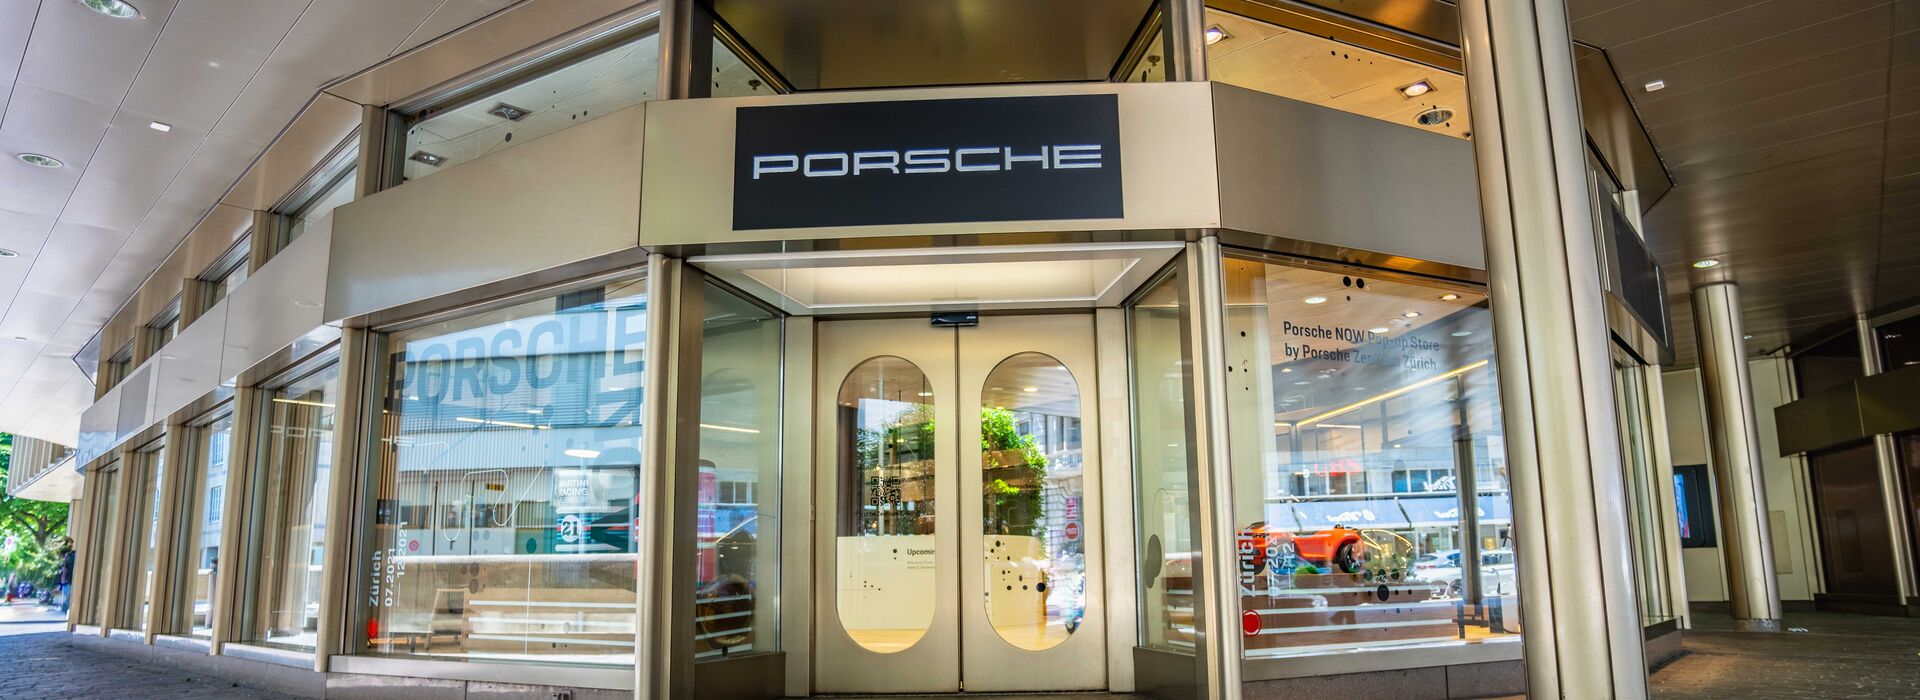 Porsche Pop-up Store